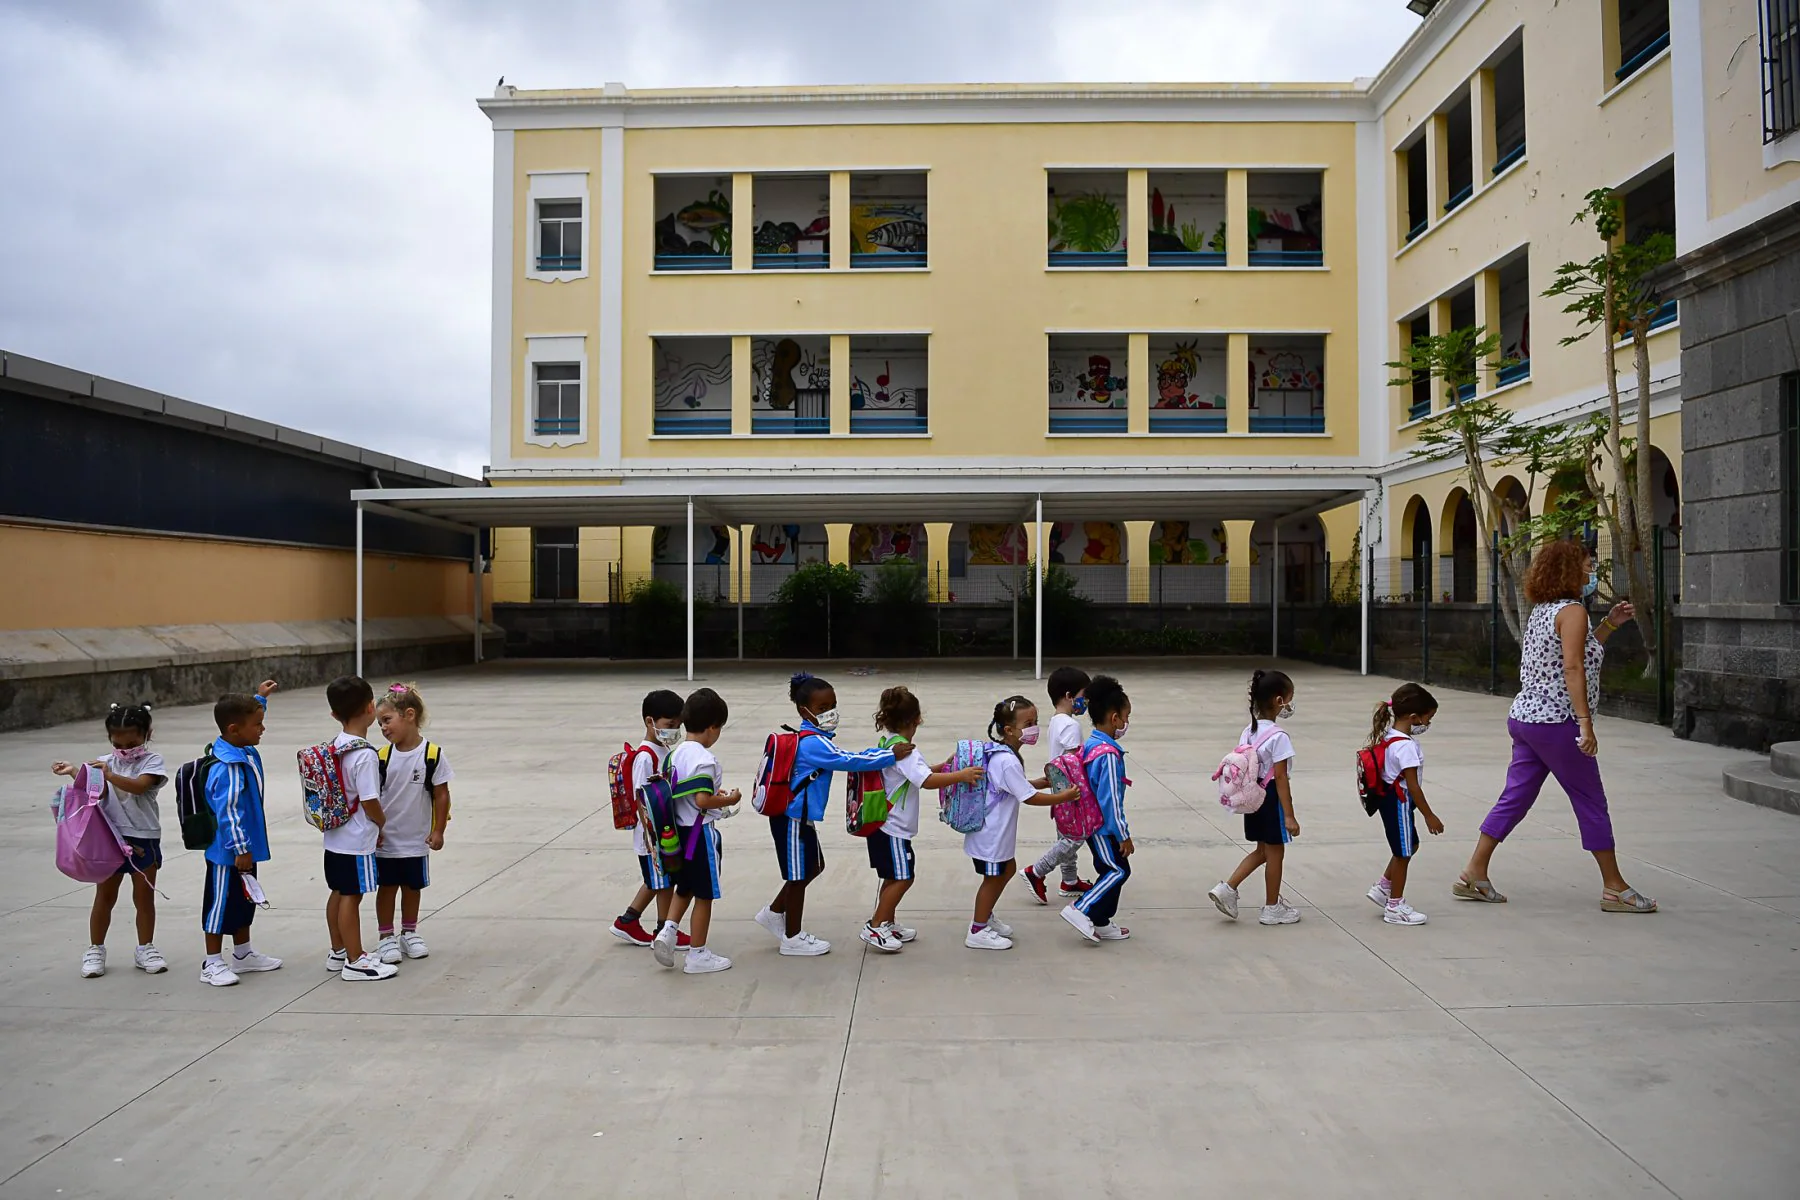 Concurso de méritos de Educación: 14.300 aspirantes, el 57%, son de fuera de las islas